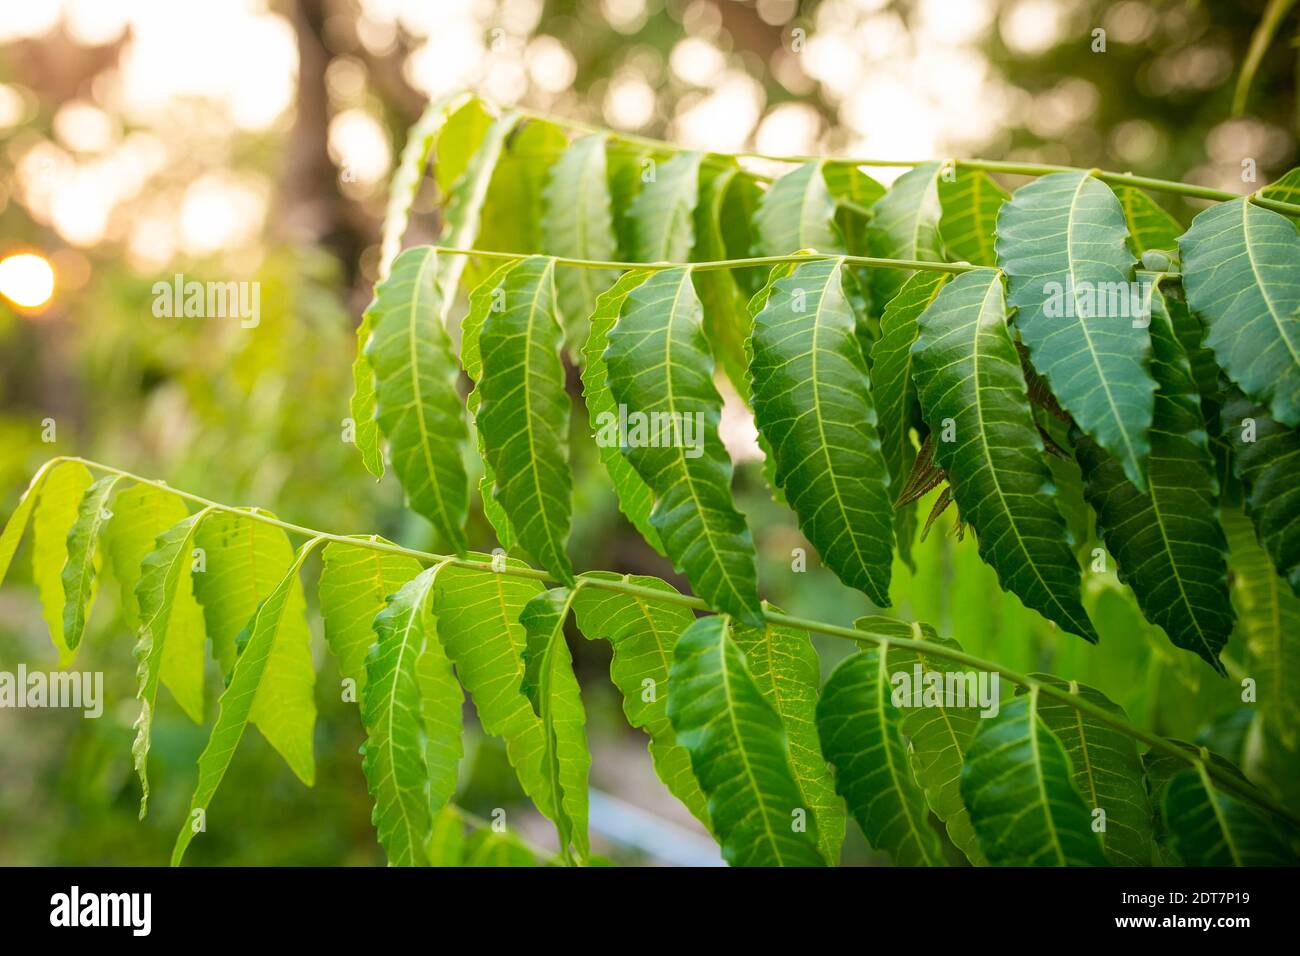 Neues Top Leaf Of Neem Plant. Azadirachta Indica   EIN Zweig von ...